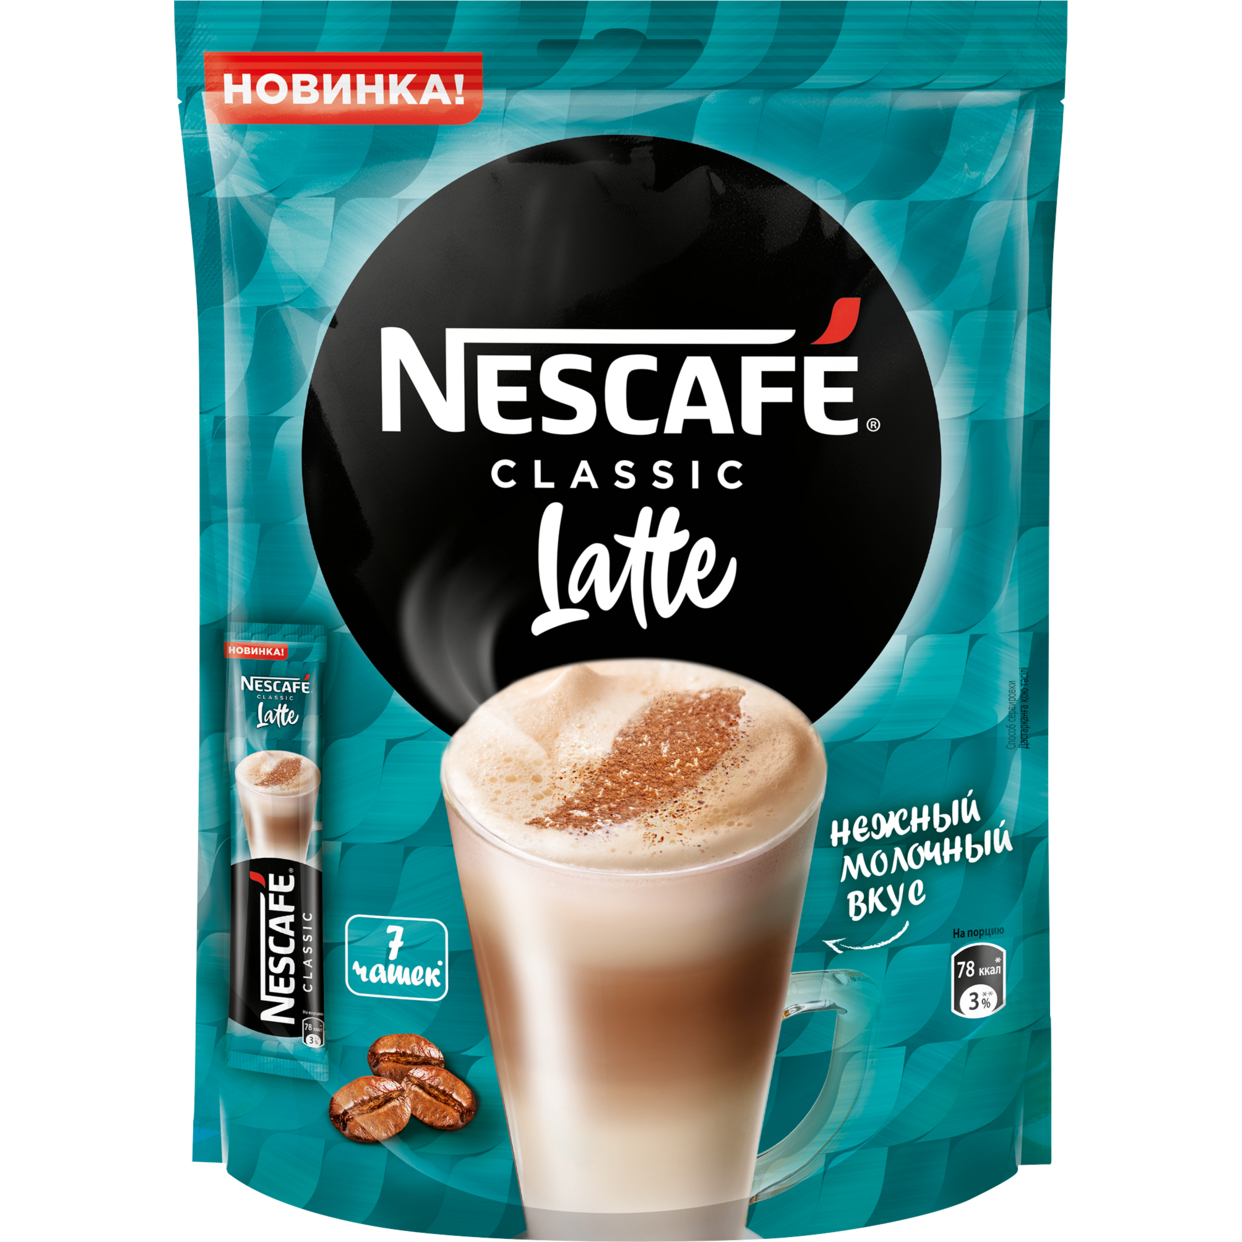 Кофе Nescafe Classic Latte, растворимый, 7х18 г по акции в Пятерочке